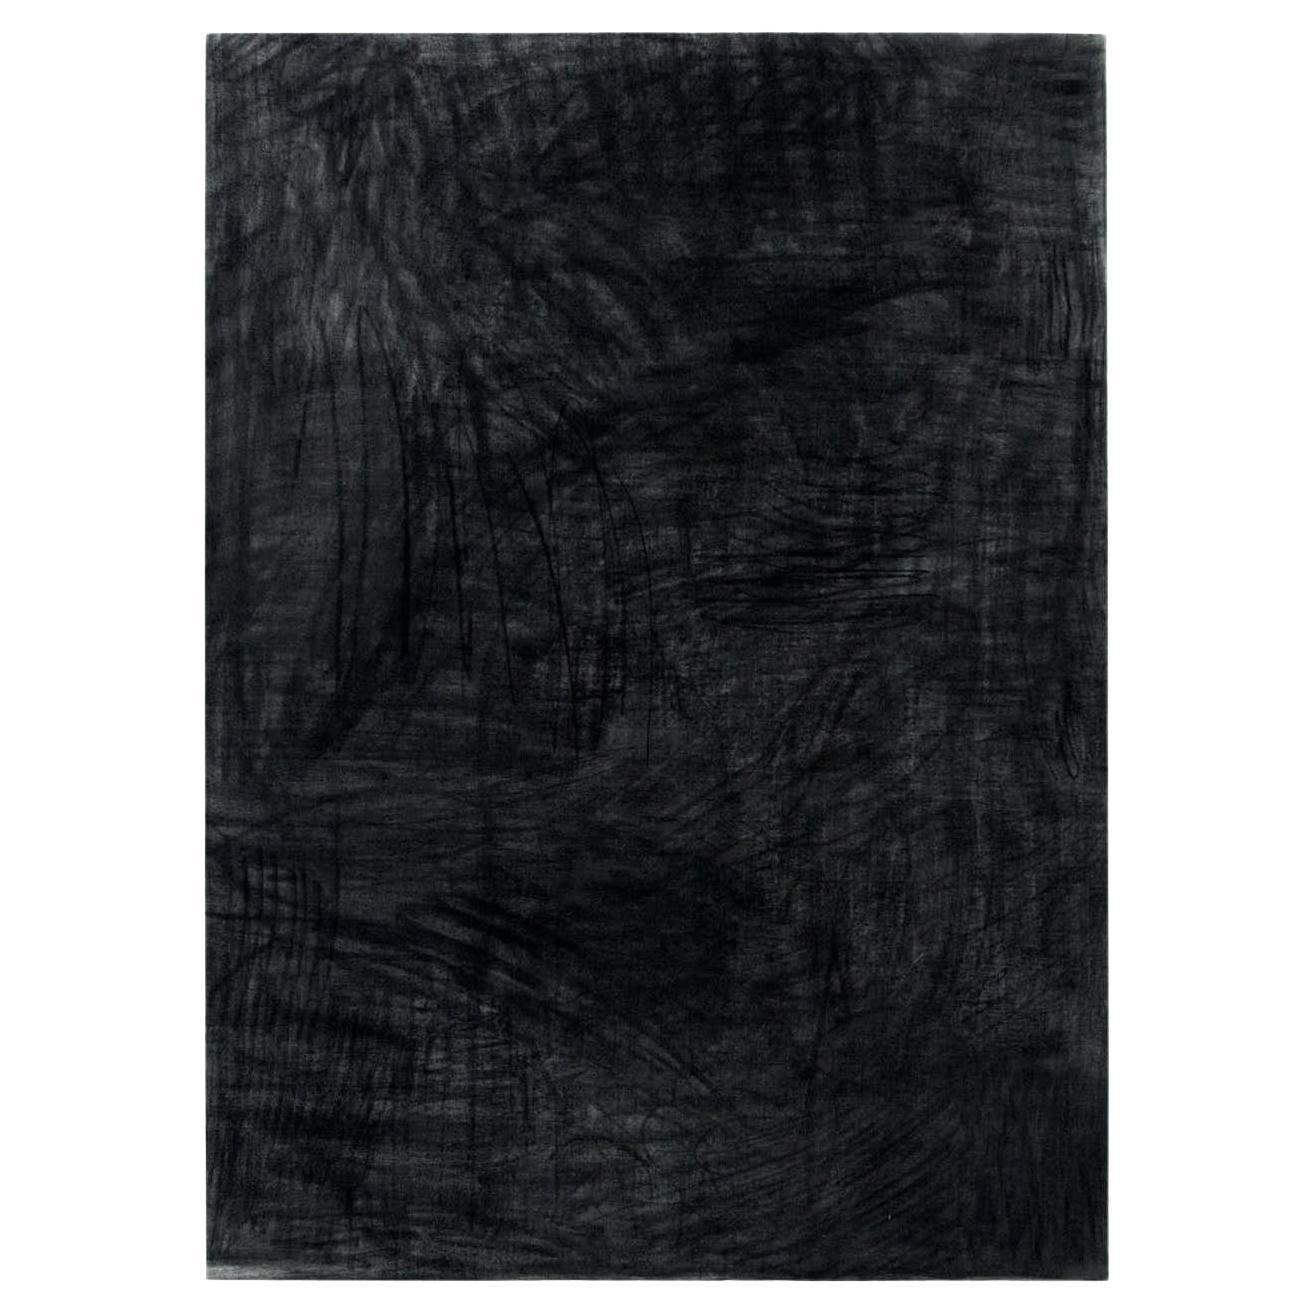 Peinture noire - Enrico Dellatorre